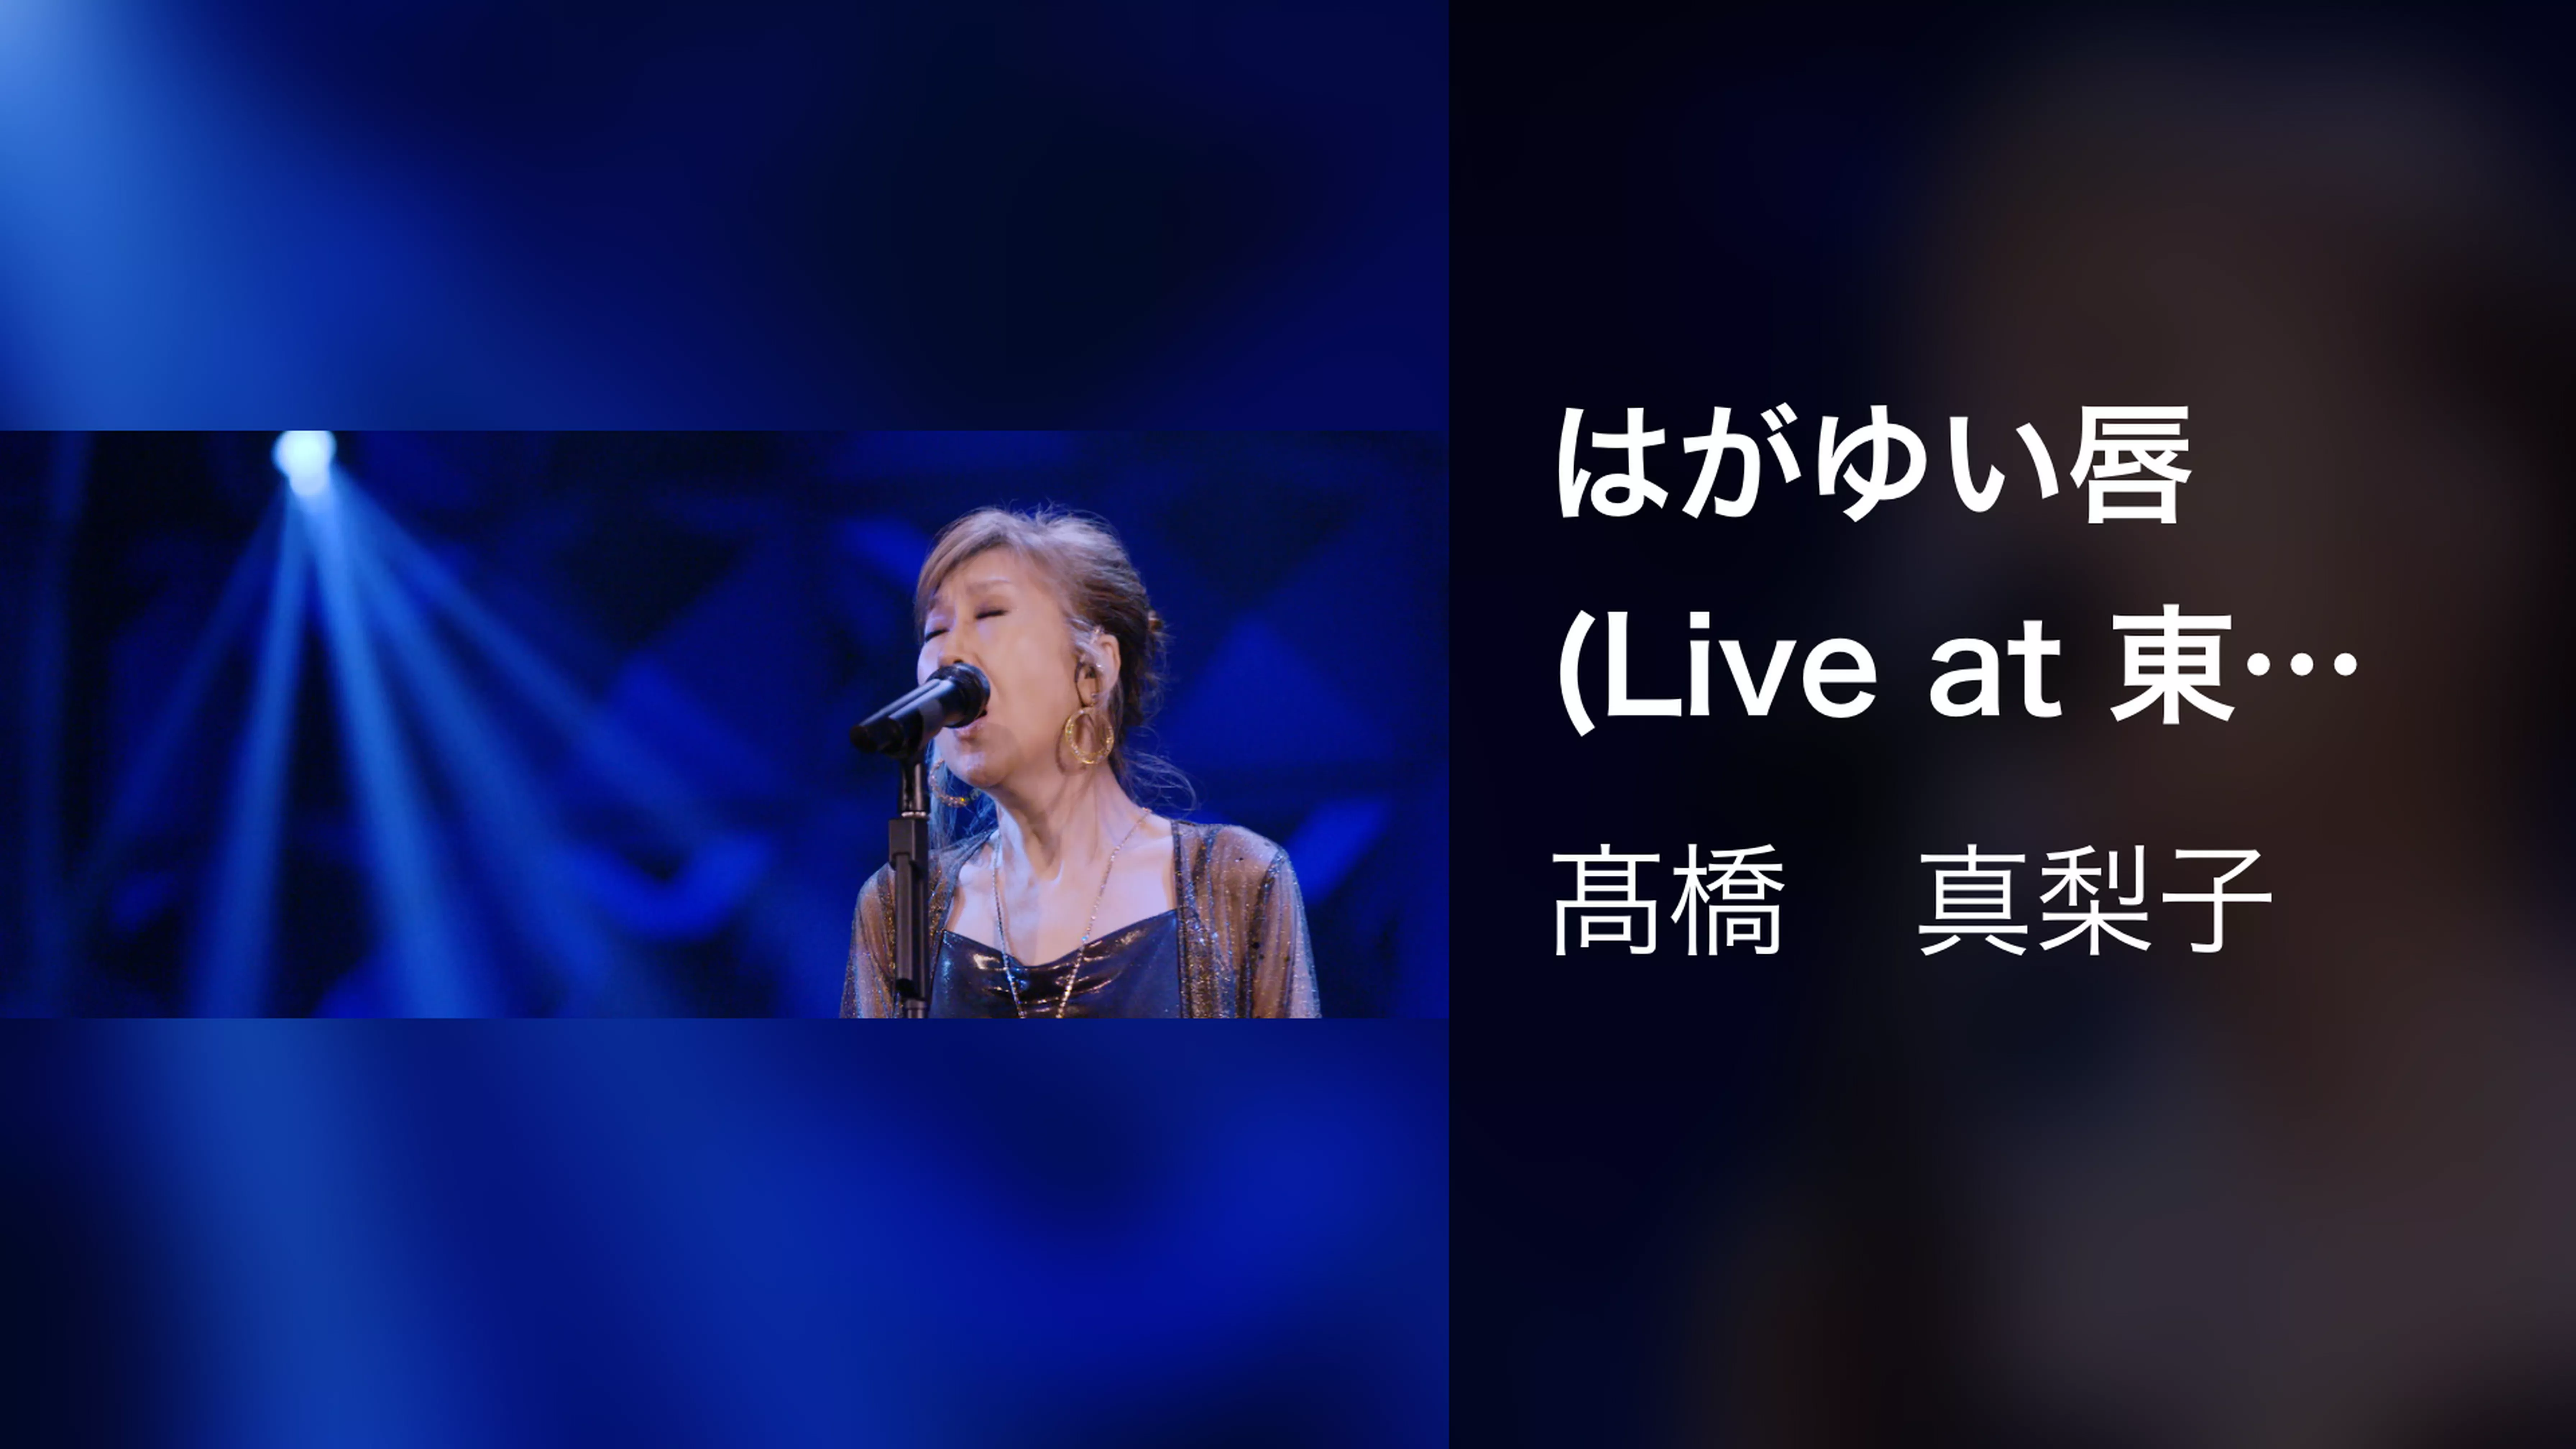 はがゆい唇(Live at 東京国際フォーラム ホール A on November 23, 2019)